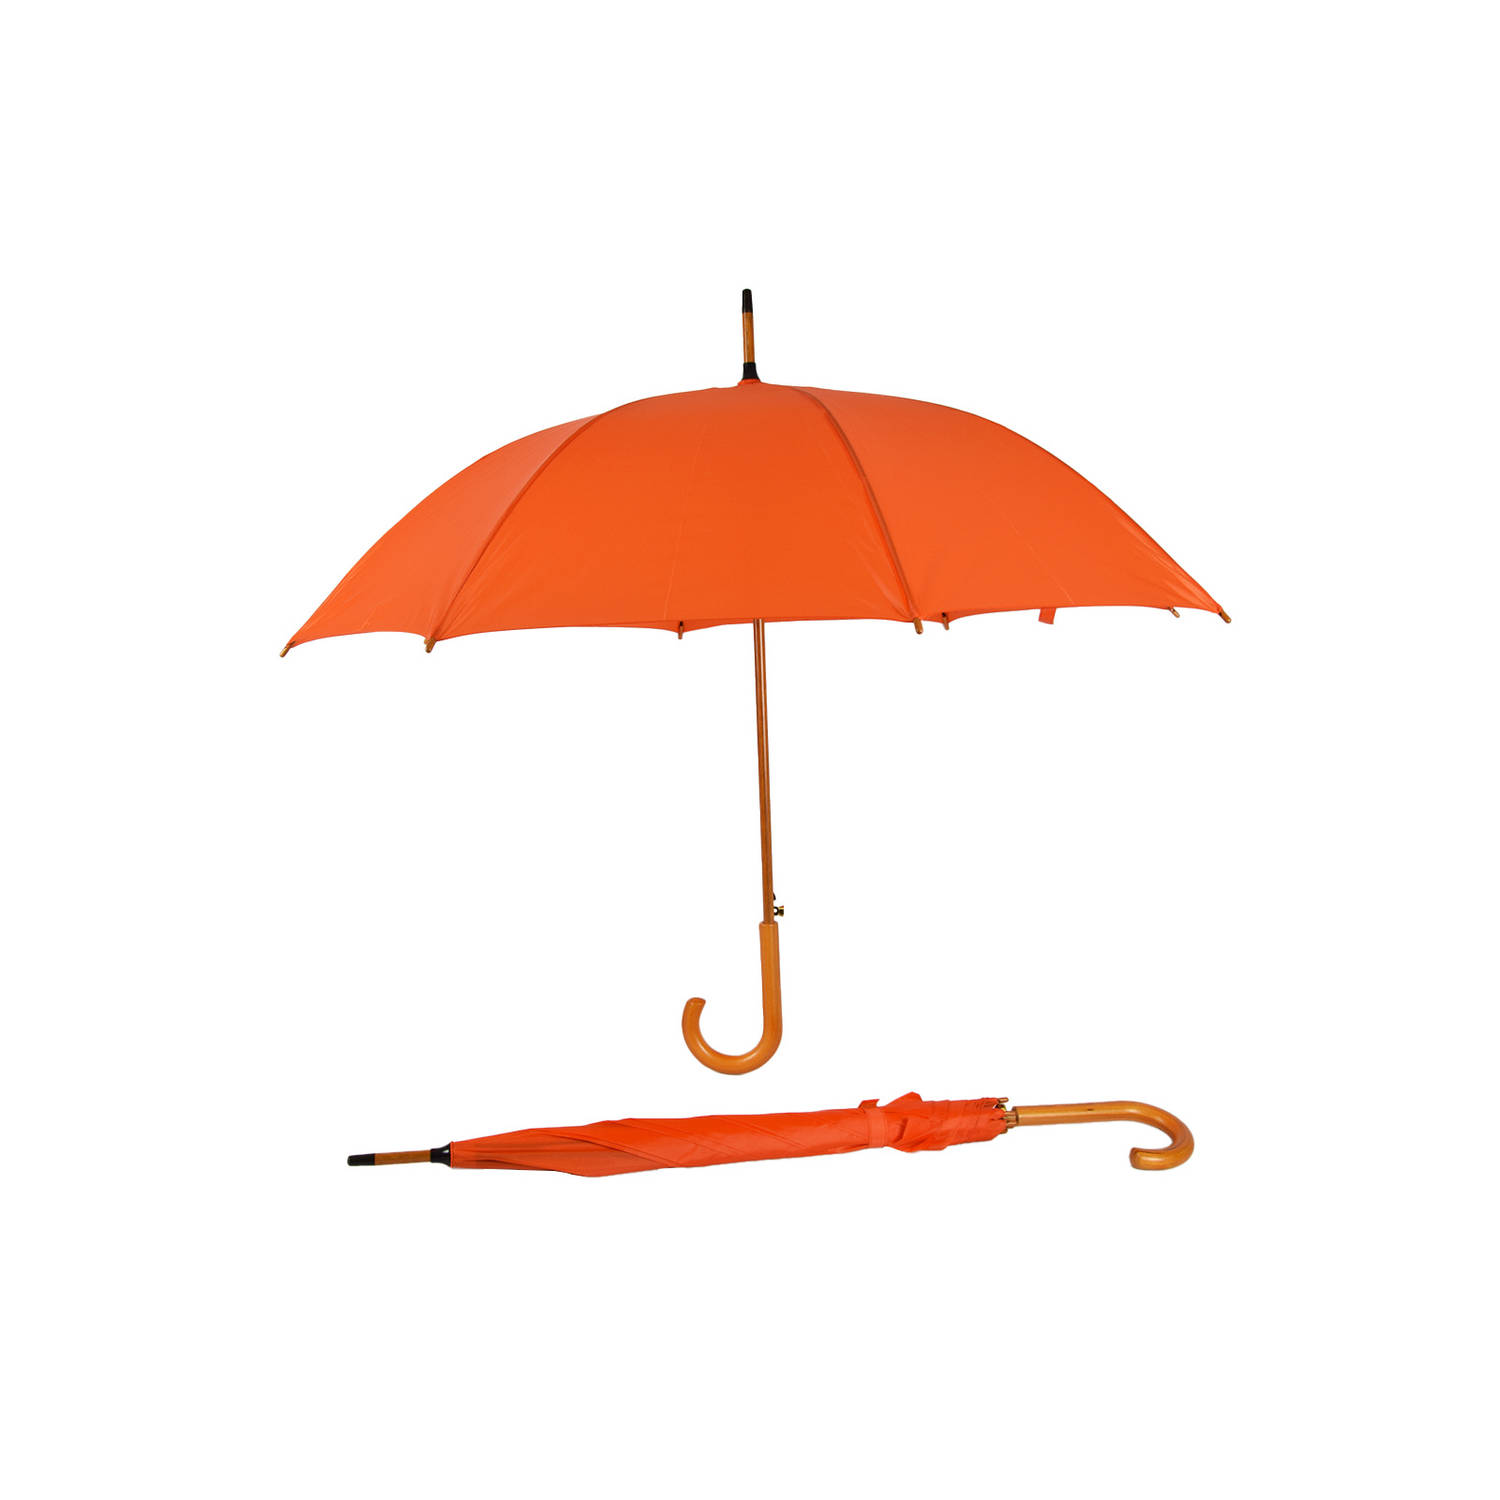 Set van 2 Oranje Automatische Paraplu's - Windbestendig - Ideaal voor Koningsdag - Volwassenen - Diameter 102cm